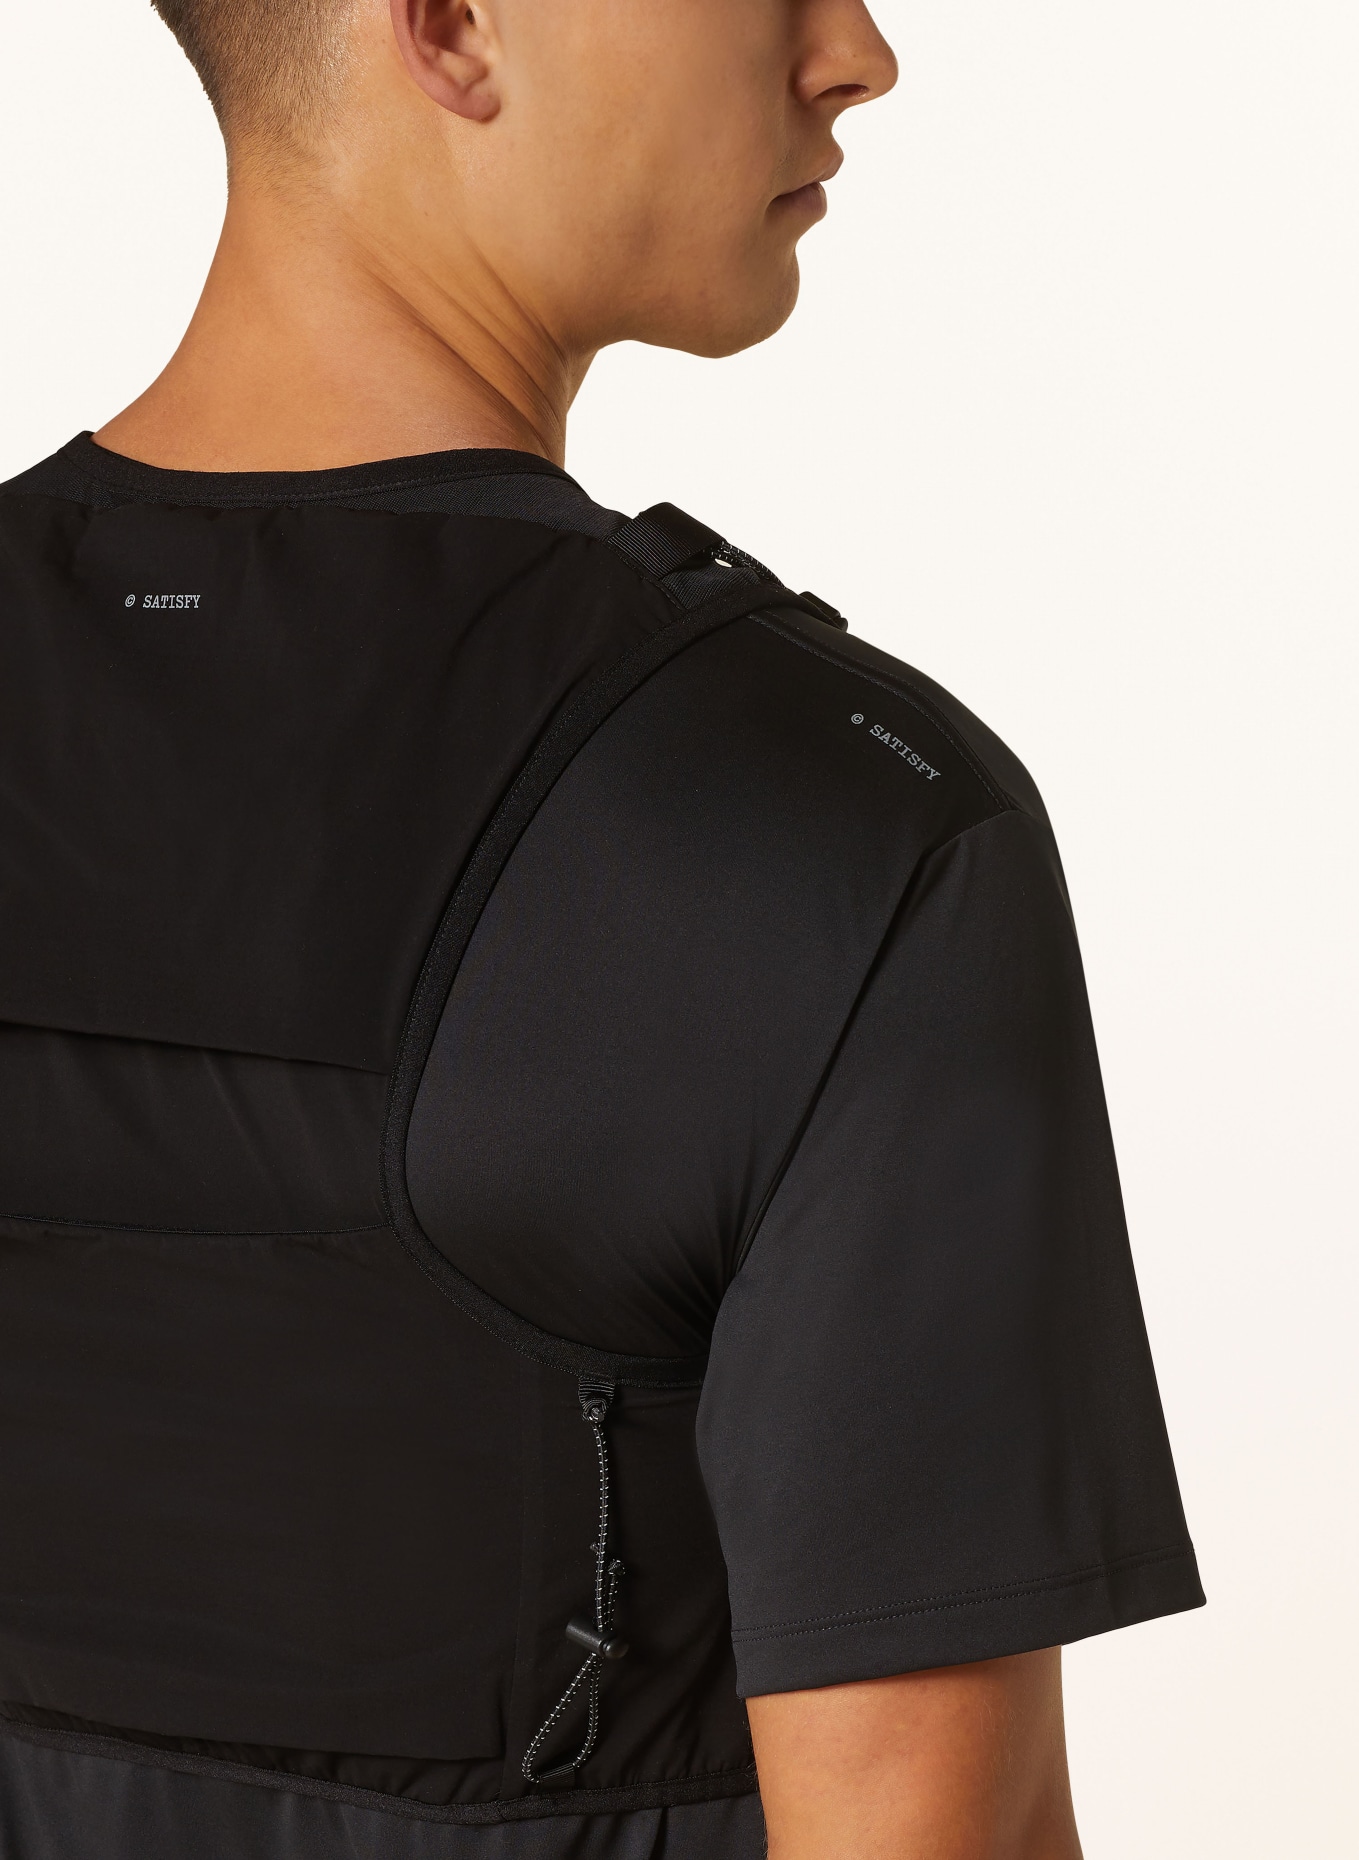 SATISFY Running vest JUSTICE™ CORDURA®, Color: BLACK (Image 4)